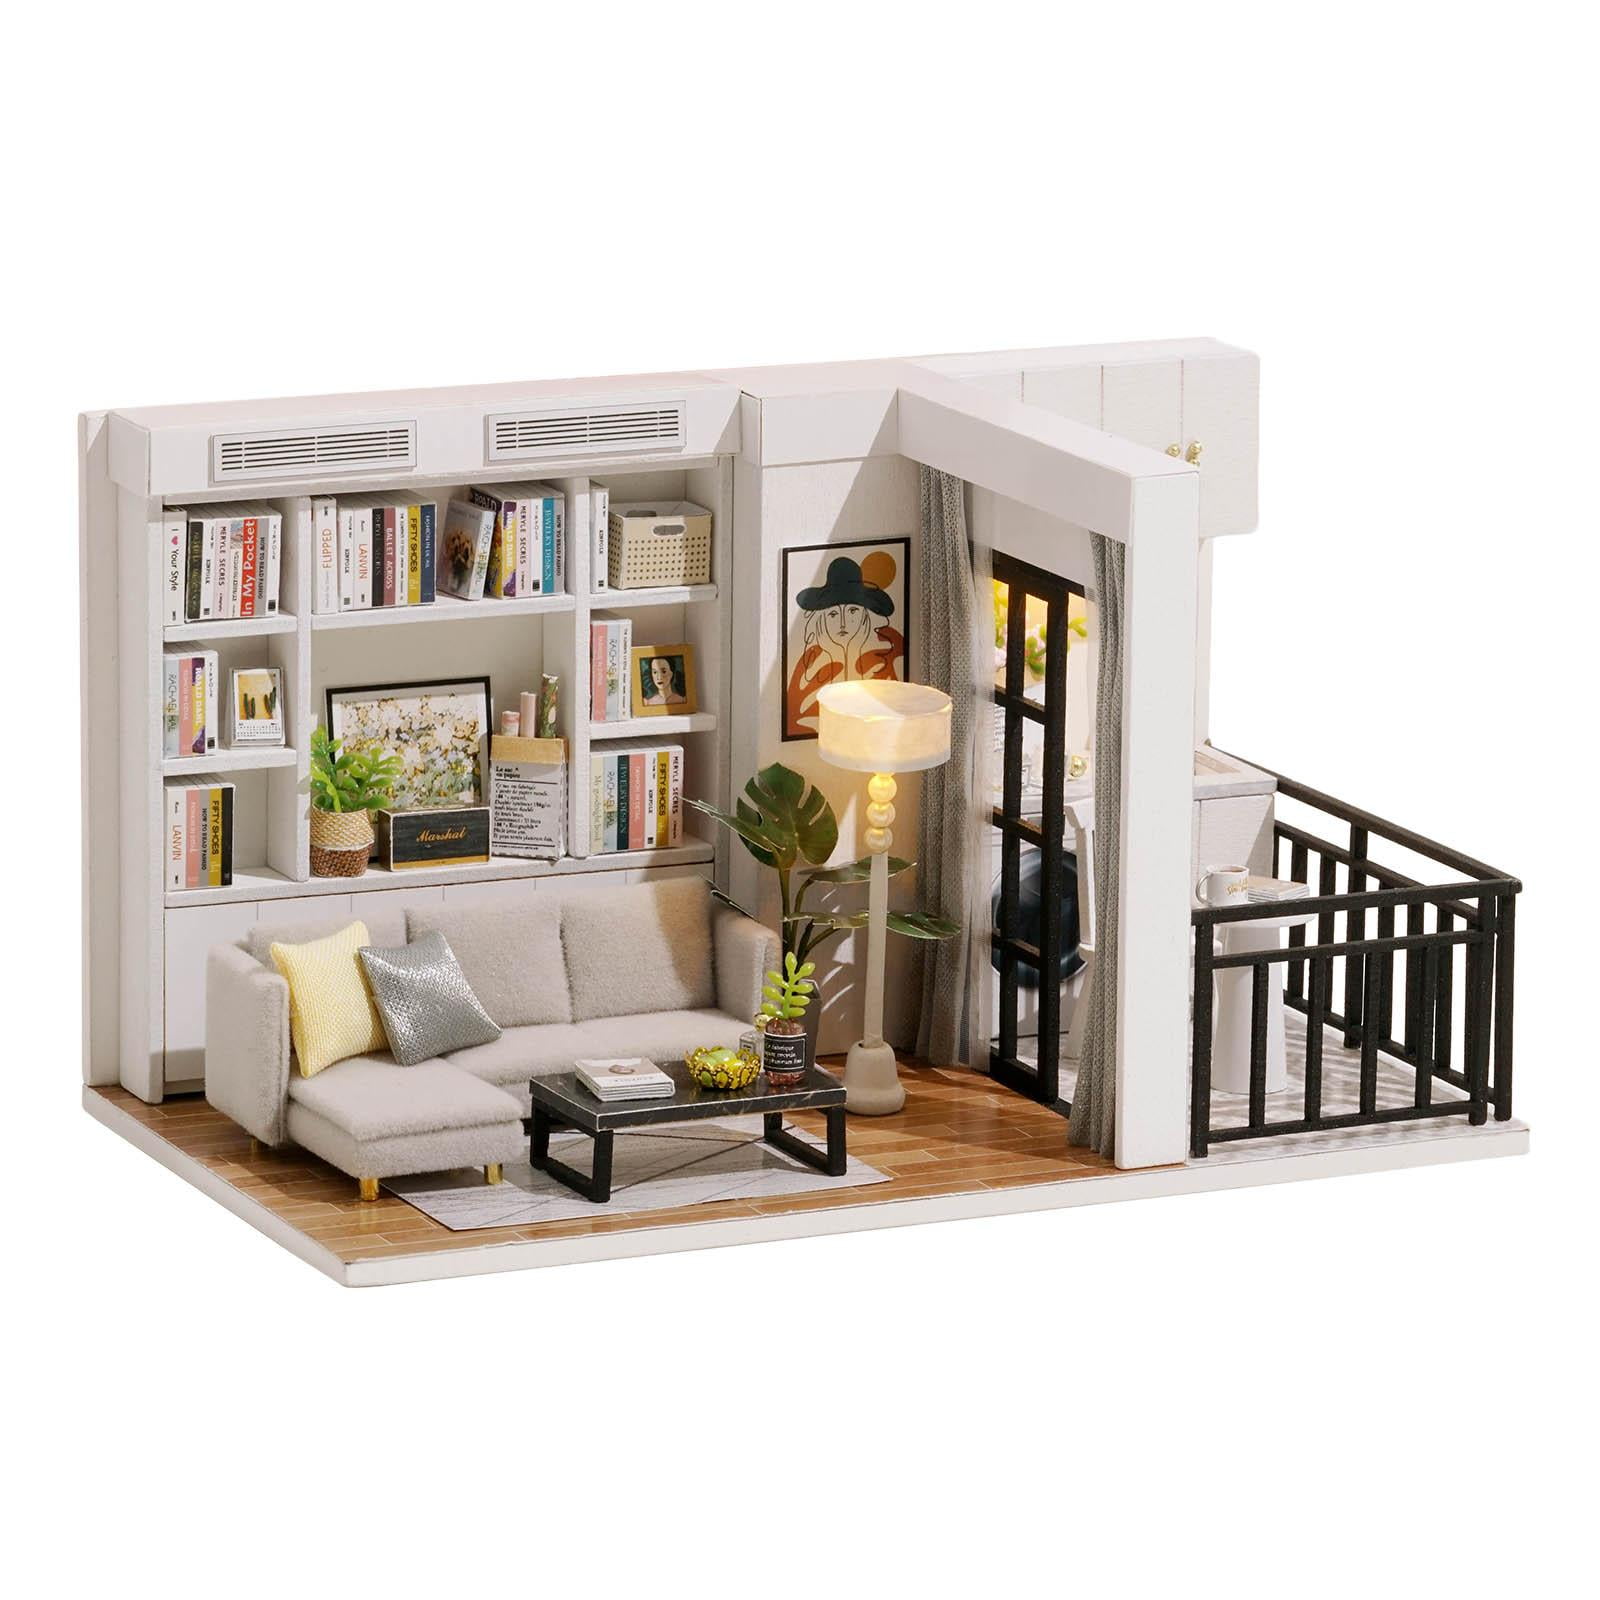 Book Shelf Furniture. Dolls House Miniature 